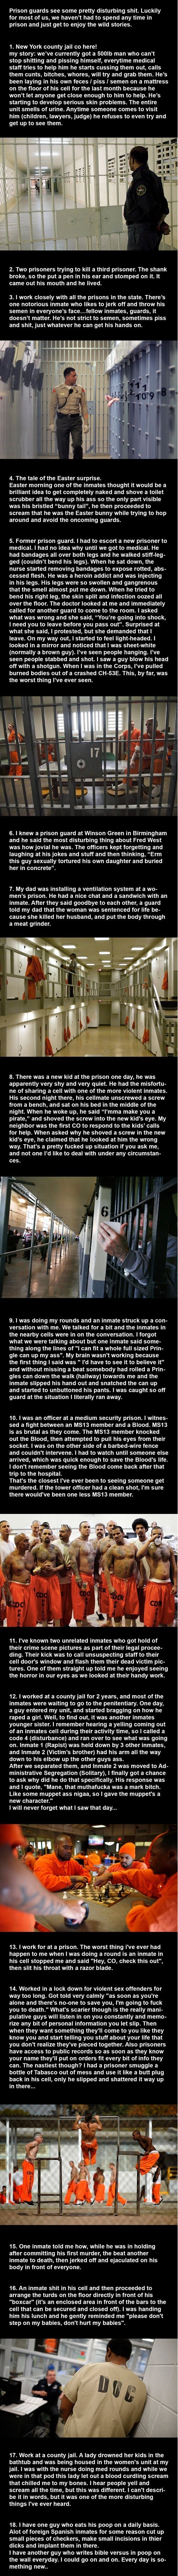 True Jail Stories